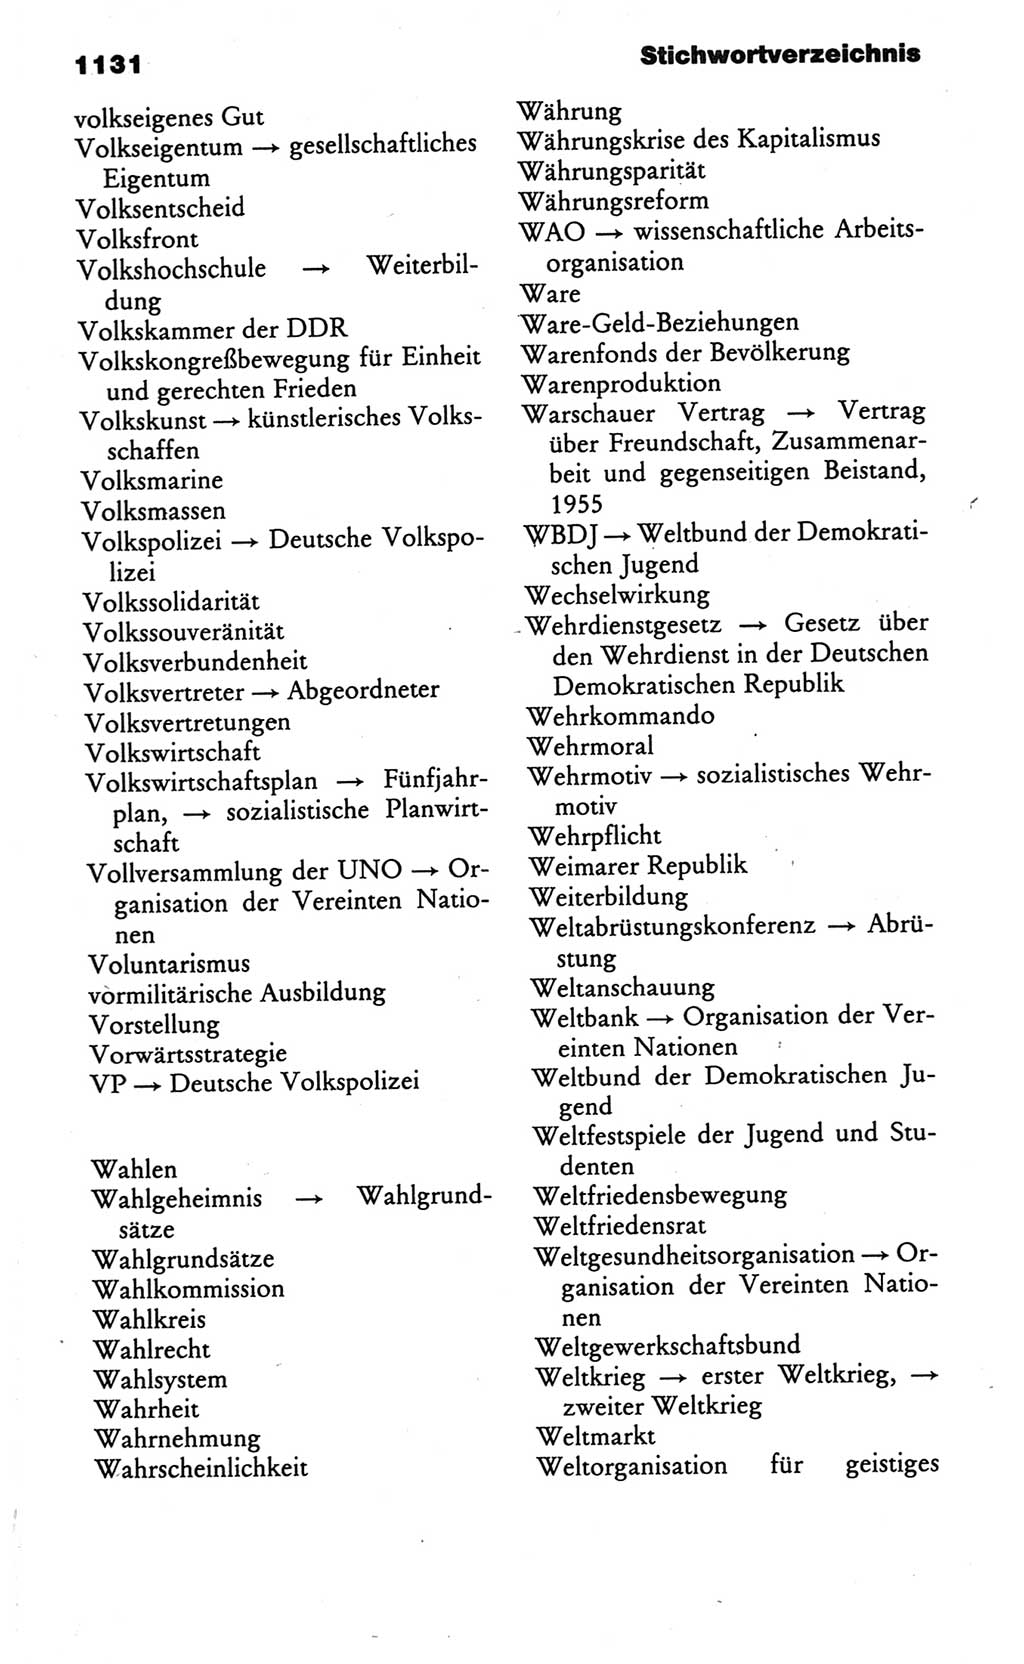 Kleines politisches Wörterbuch [Deutsche Demokratische Republik (DDR)] 1986, Seite 1131 (Kl. pol. Wb. DDR 1986, S. 1131)